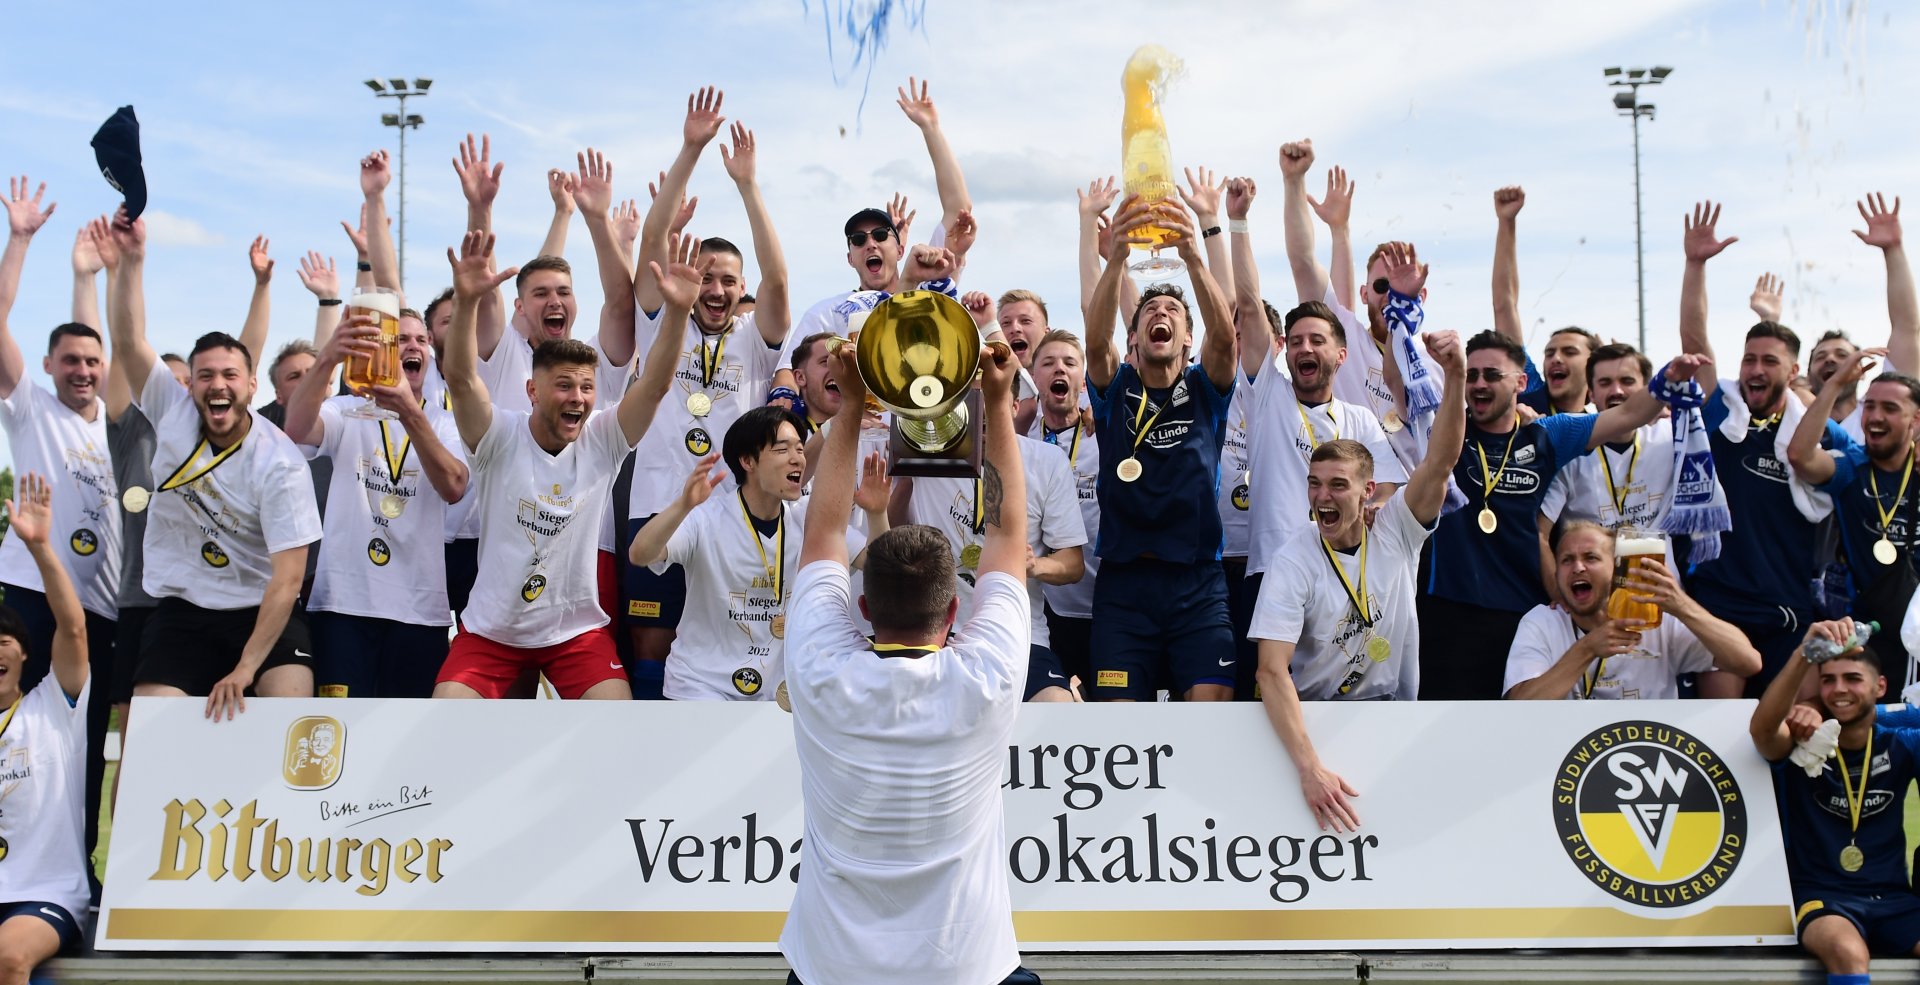 Den größten Erfolg in der jüngeren Geschichte des Mainzer Amateurfußballs feiert der TSV Schott am 21. Mai: In Weingarten gewinnt die Mannschaft von Trainer Sascha Meeth das Verbandspokalfinale gegen den FK Pirmasens durch Tore von Giorgio Del Vecchio (2) und Etienne Portmann mit 3:0. 